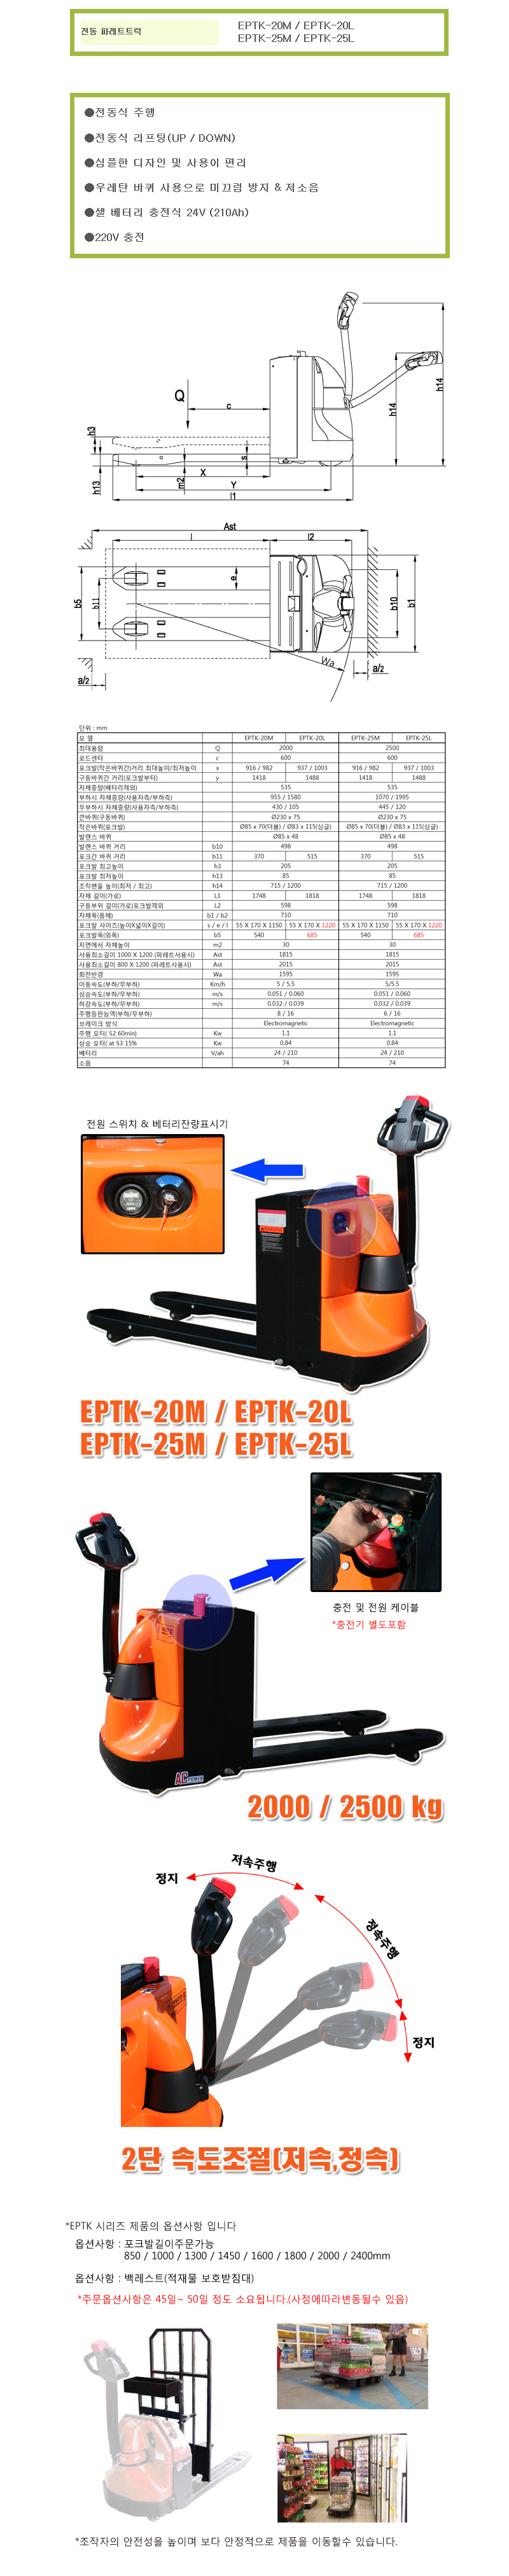 EPTK-20M